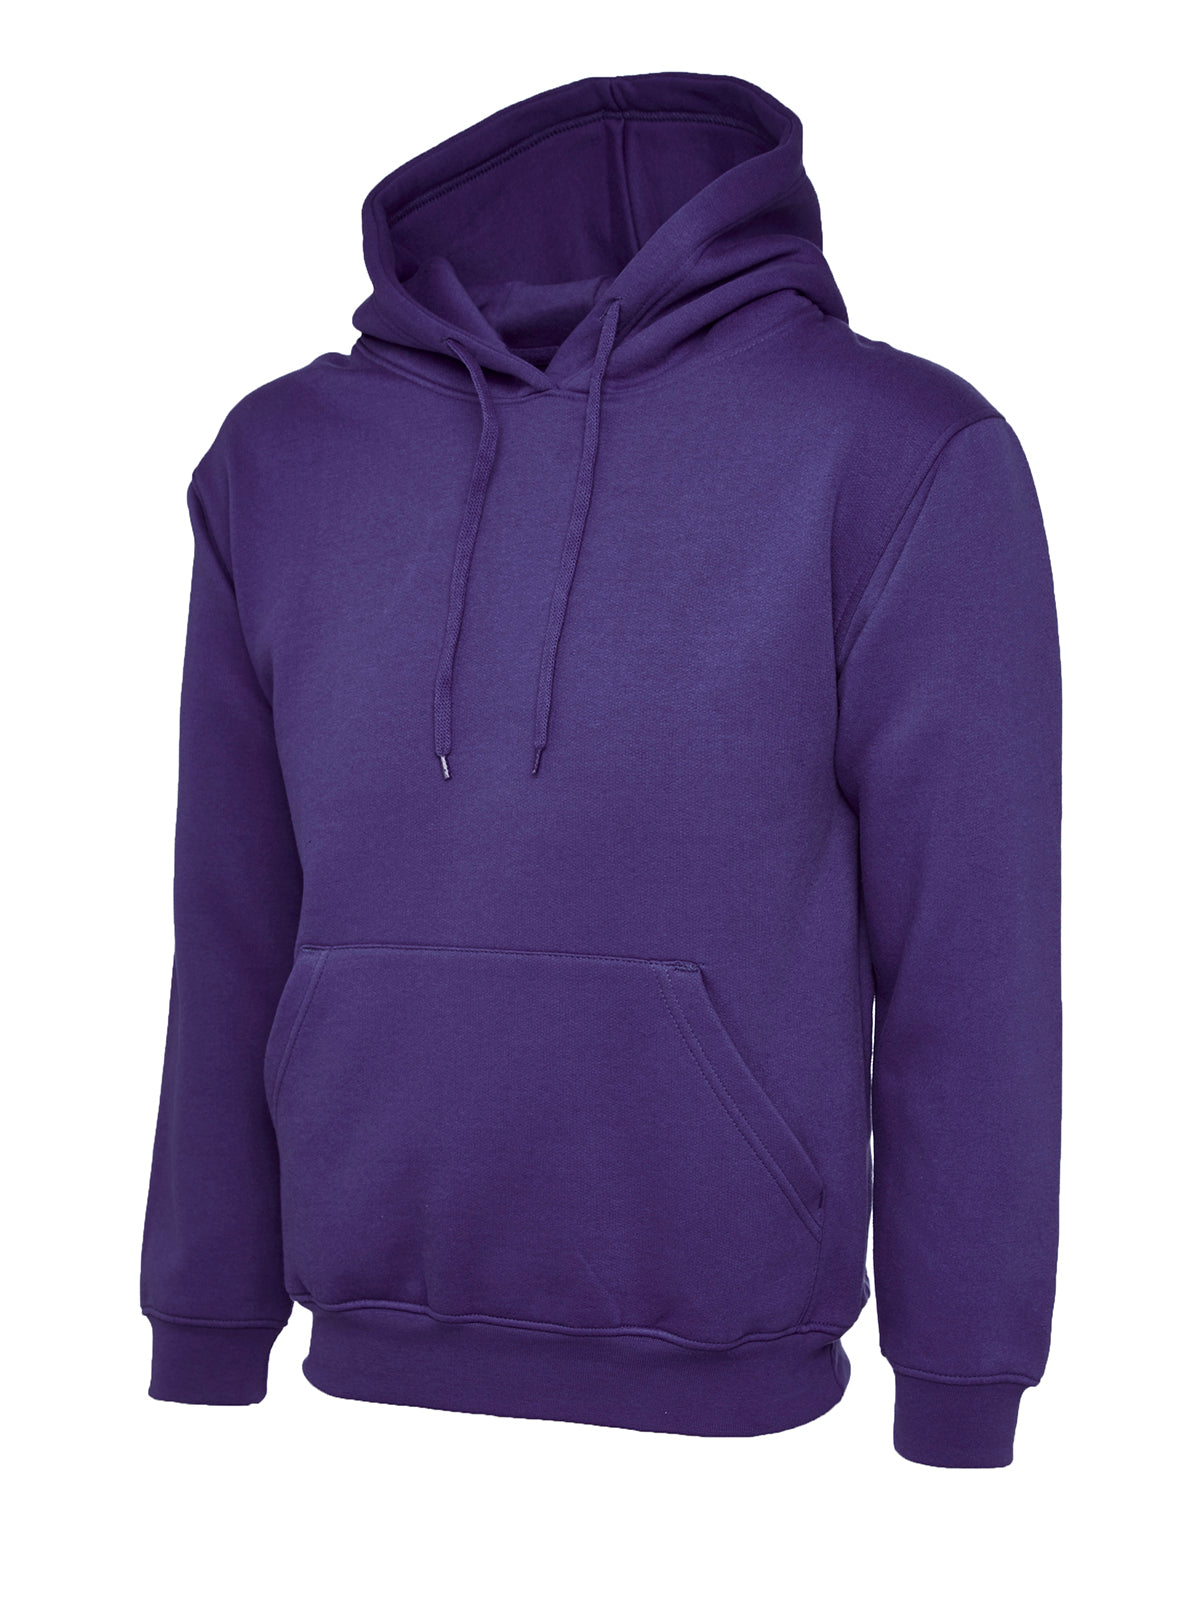 Uneek Classic Hoodie Sweatshirt - Purple